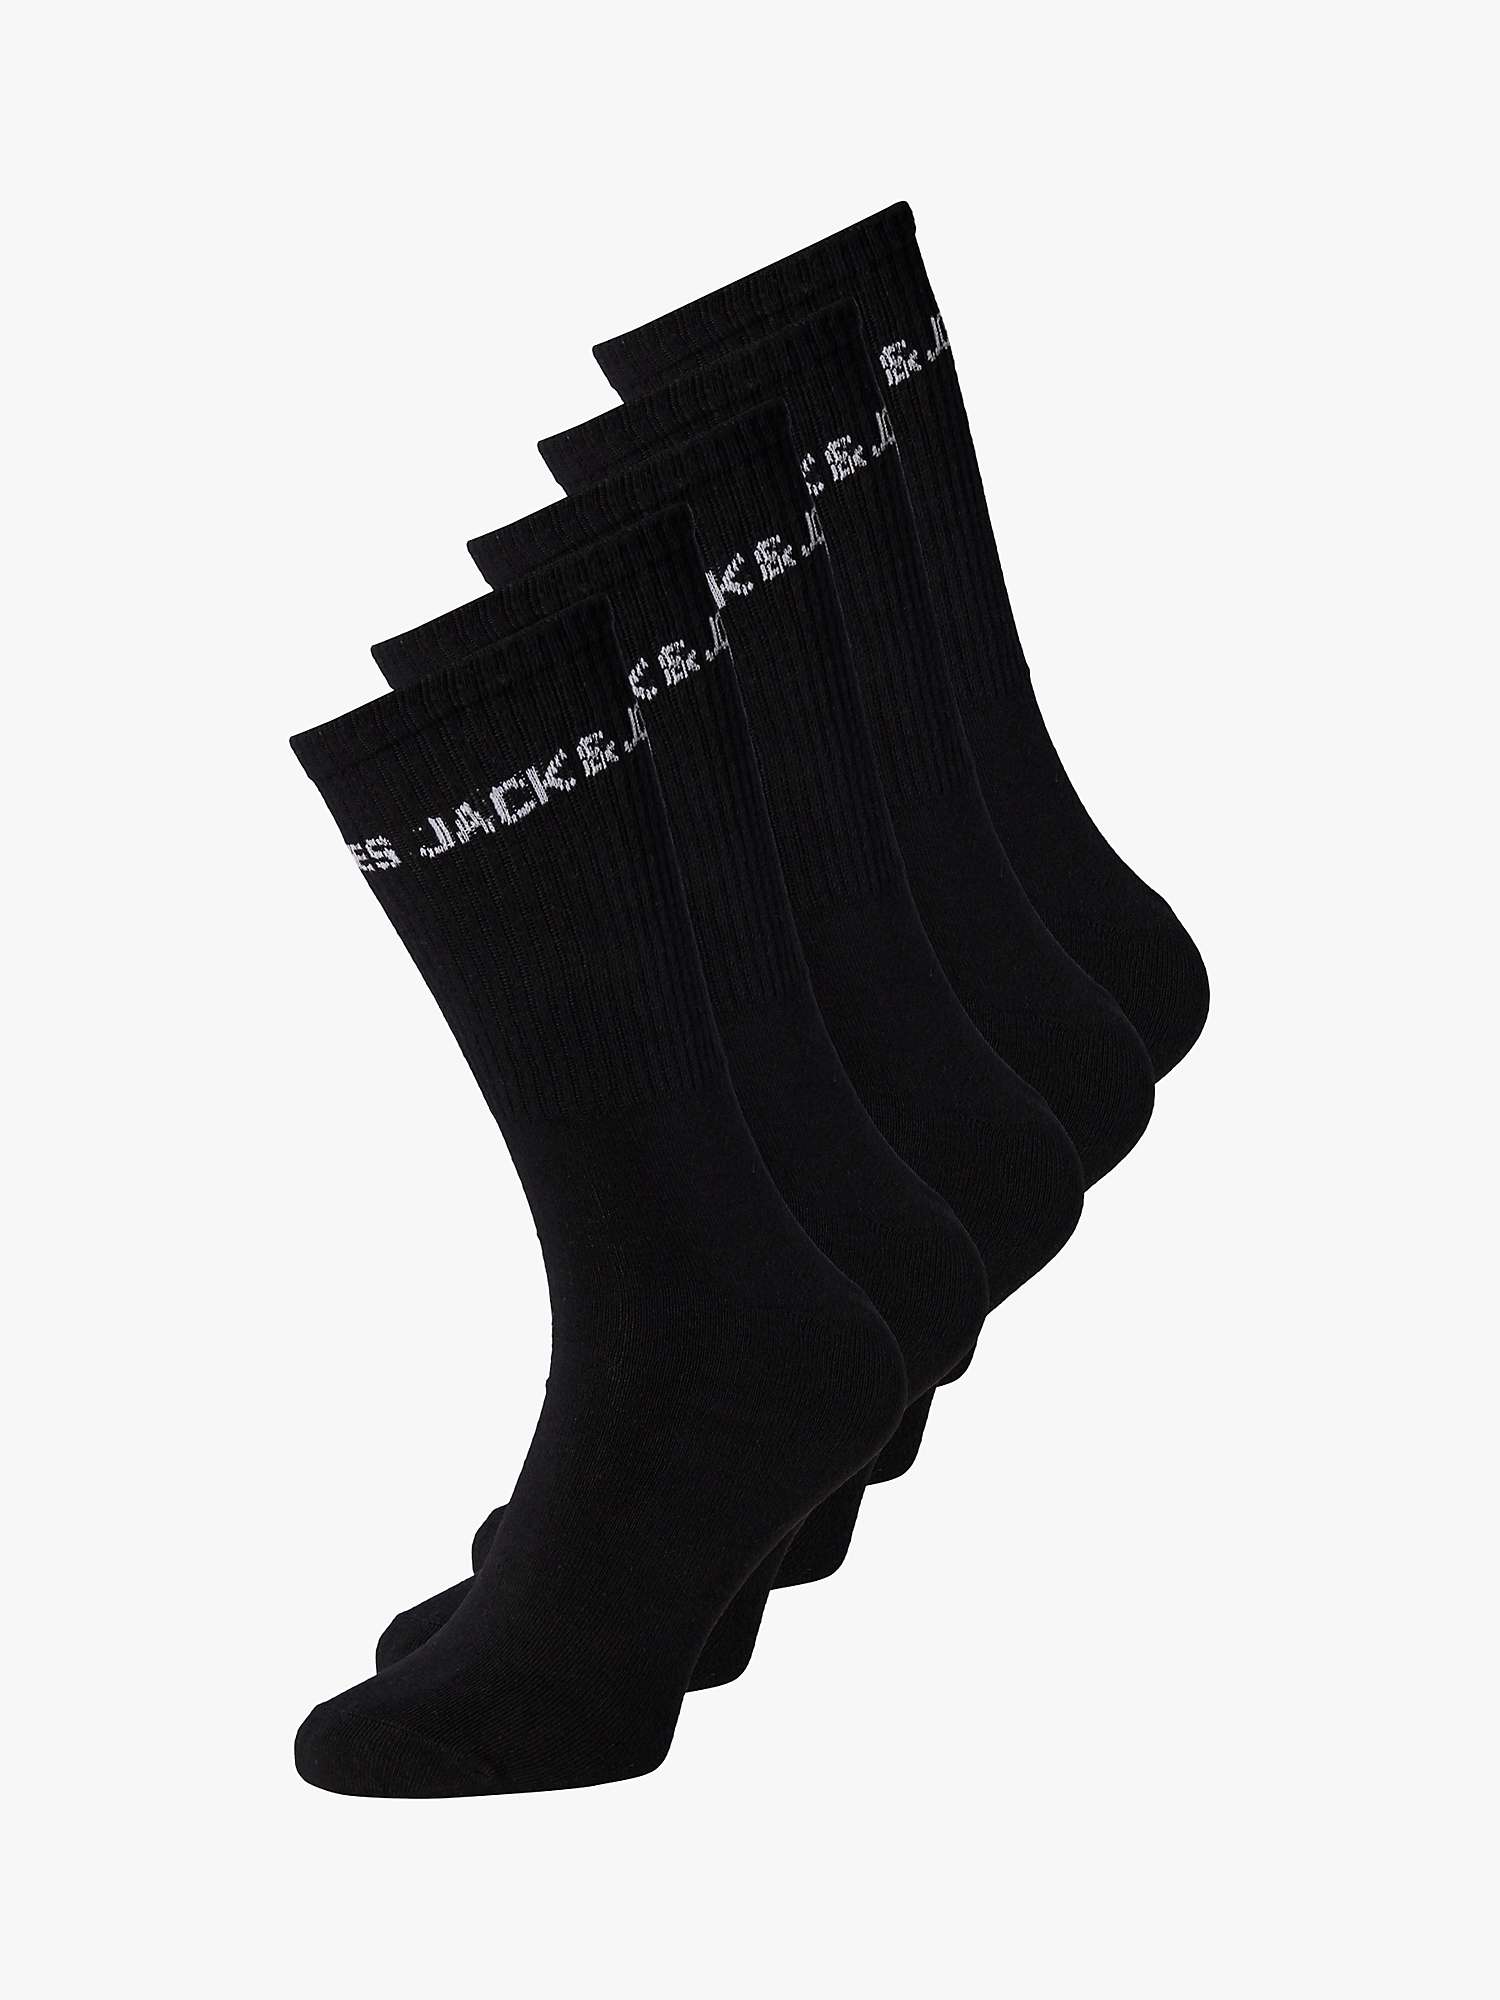 Buy Jack & Jones Kids' Tennis Socks, Pack of 5, Black Online at johnlewis.com